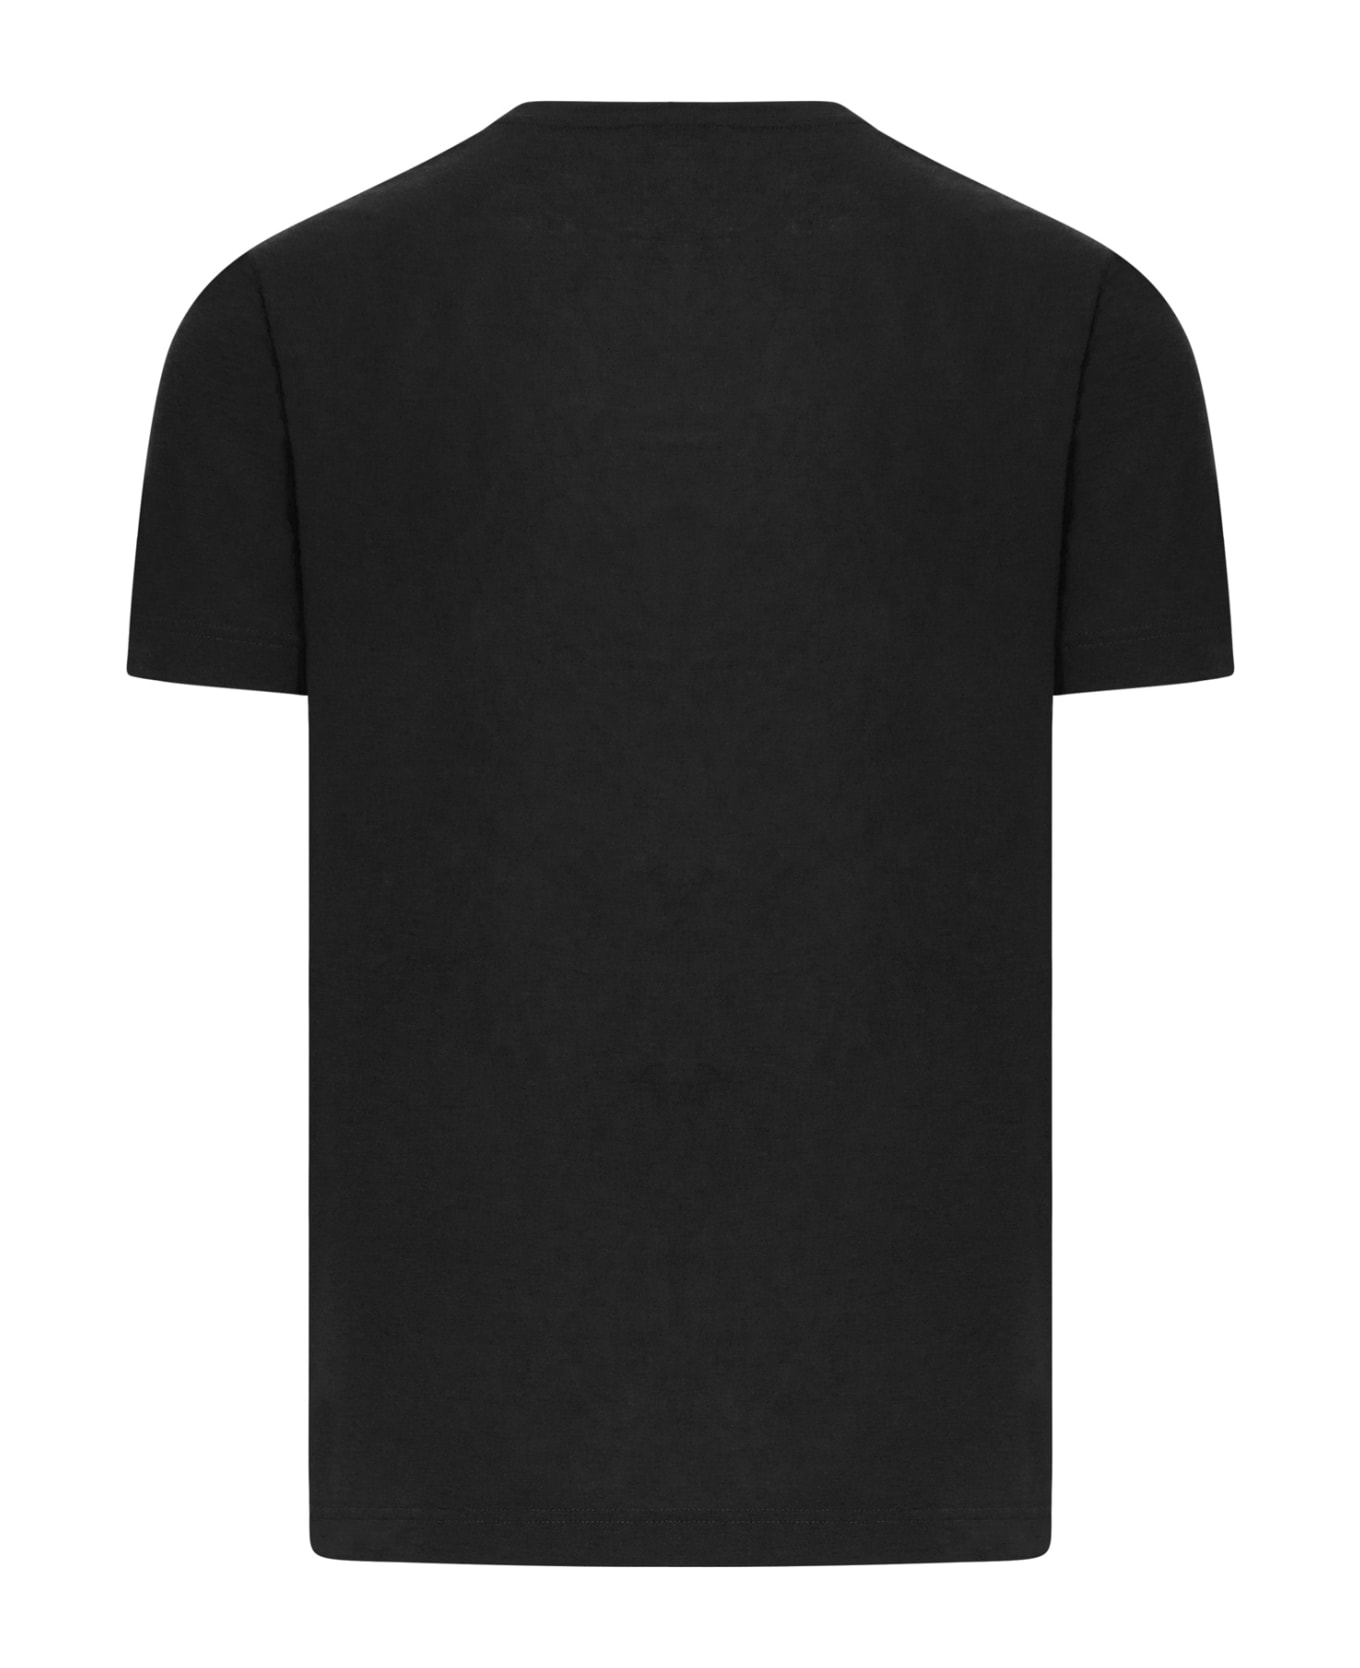 Zanone Tshirt Ss - Black シャツ